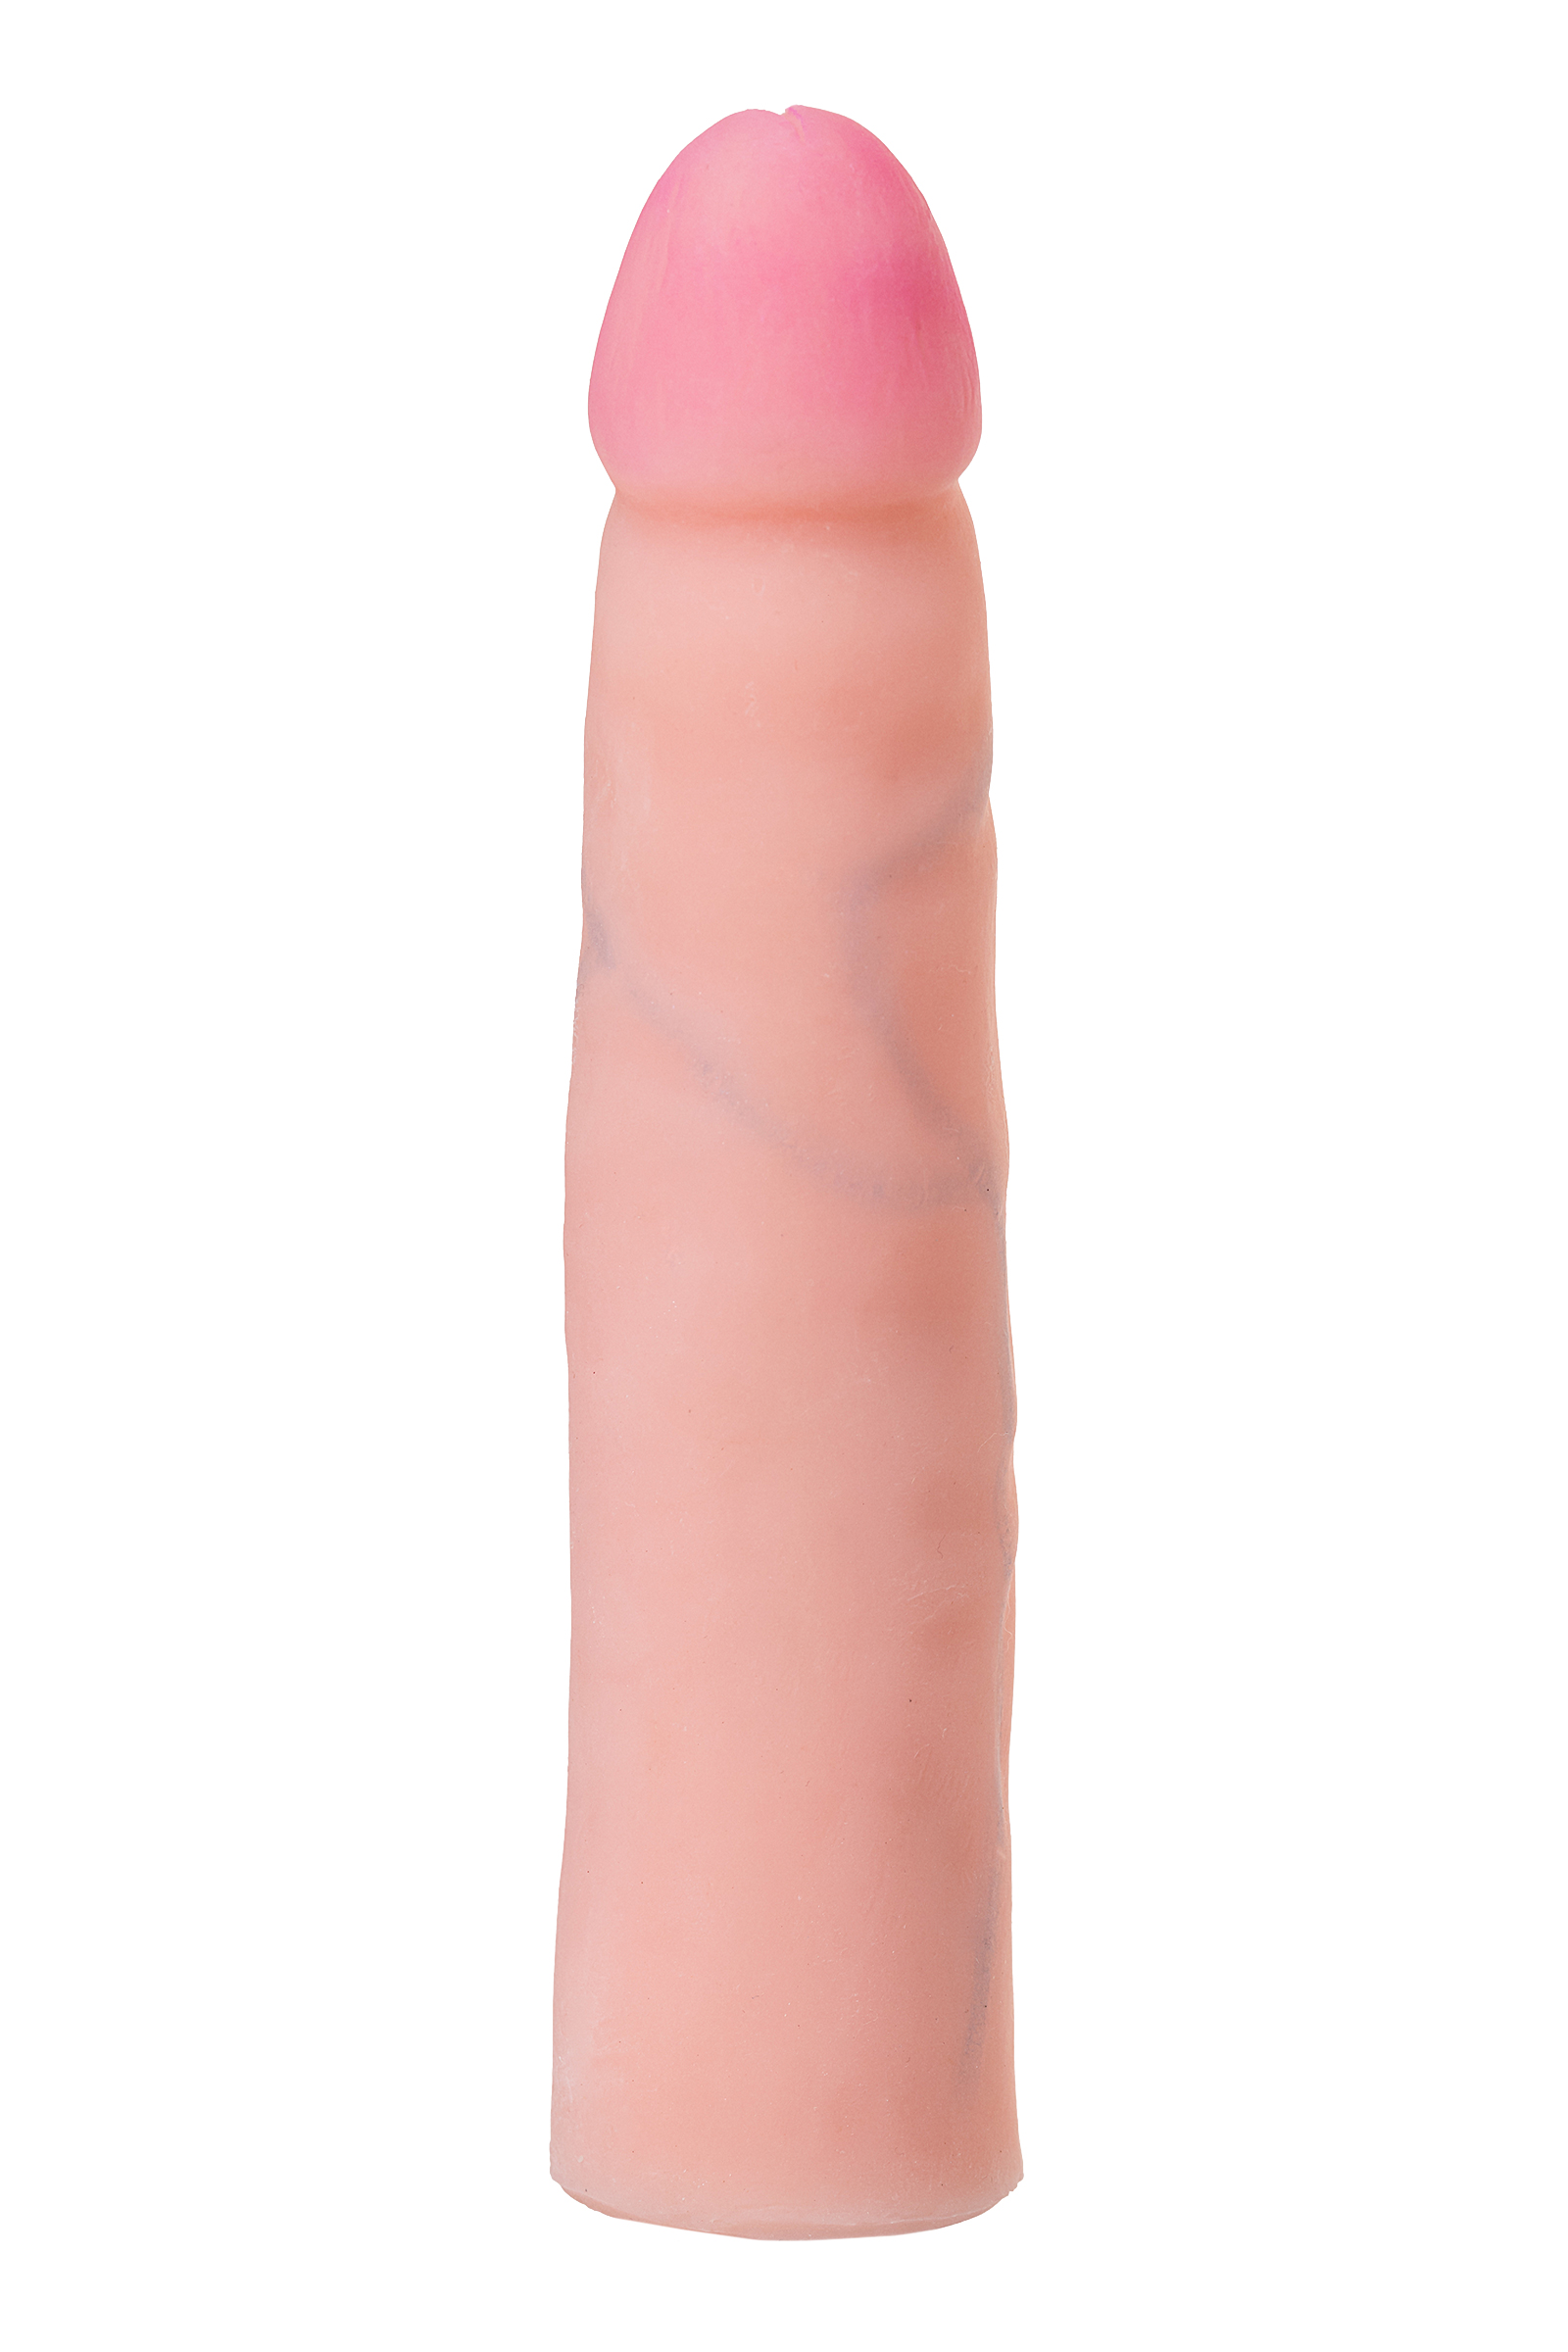 Страпон LoveToy с поясом Harness, с 2 насадками, реалистичный, neoskin, телесный, 18 см. Фото N11